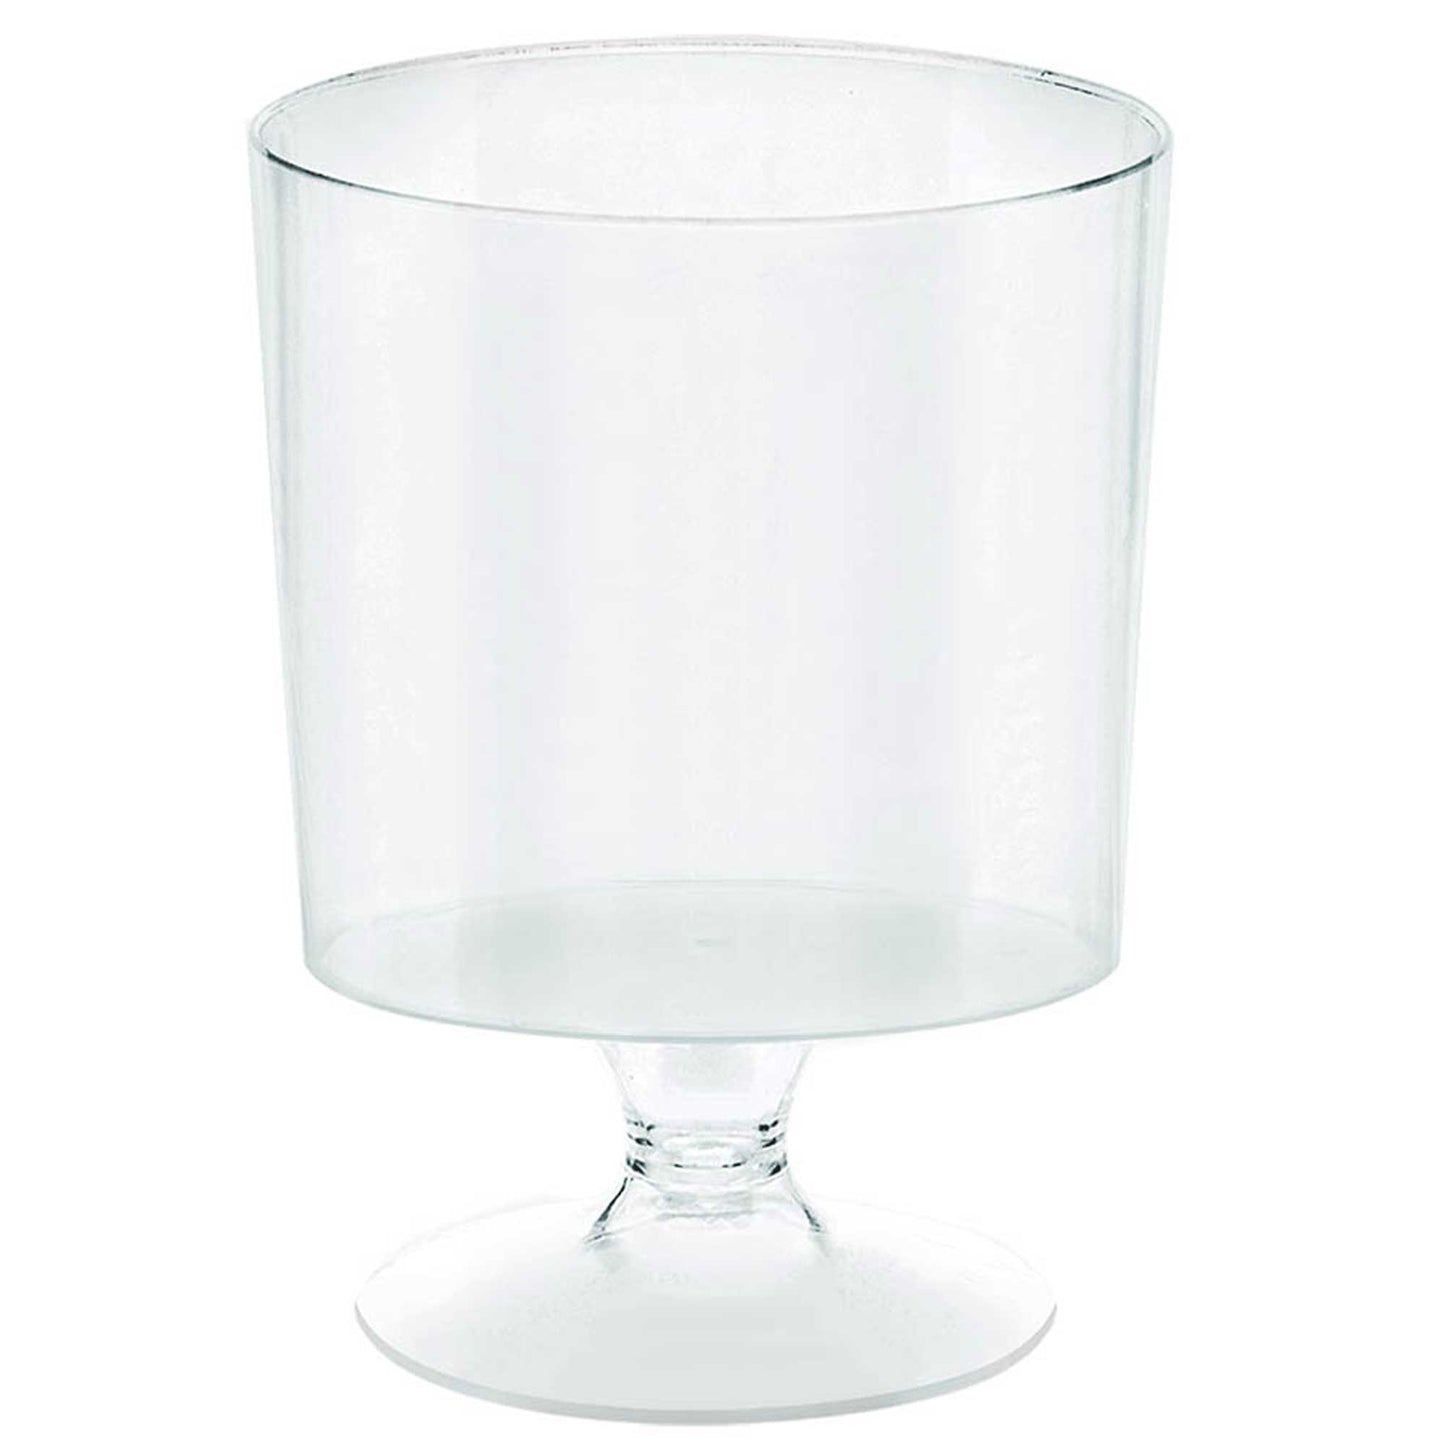 Mini Catering Pedestal Cups Clear Plastic 5oz/ 147ml